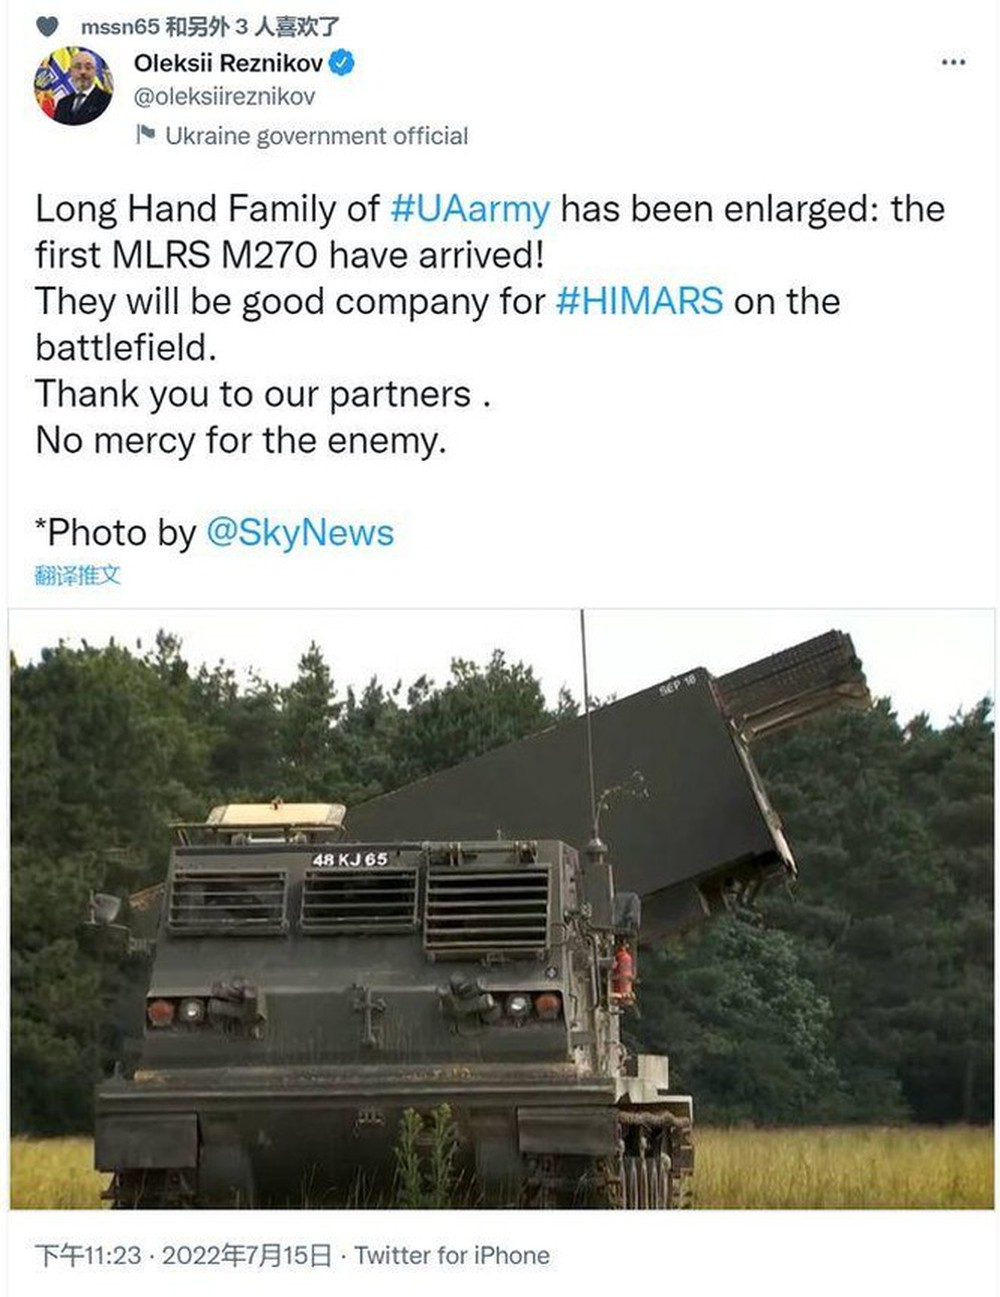 Uy lực của lô tên lửa M270 Ukraine vừa nhận có thể giúp thay đổi cục diện chiến trường? - Ảnh 2.